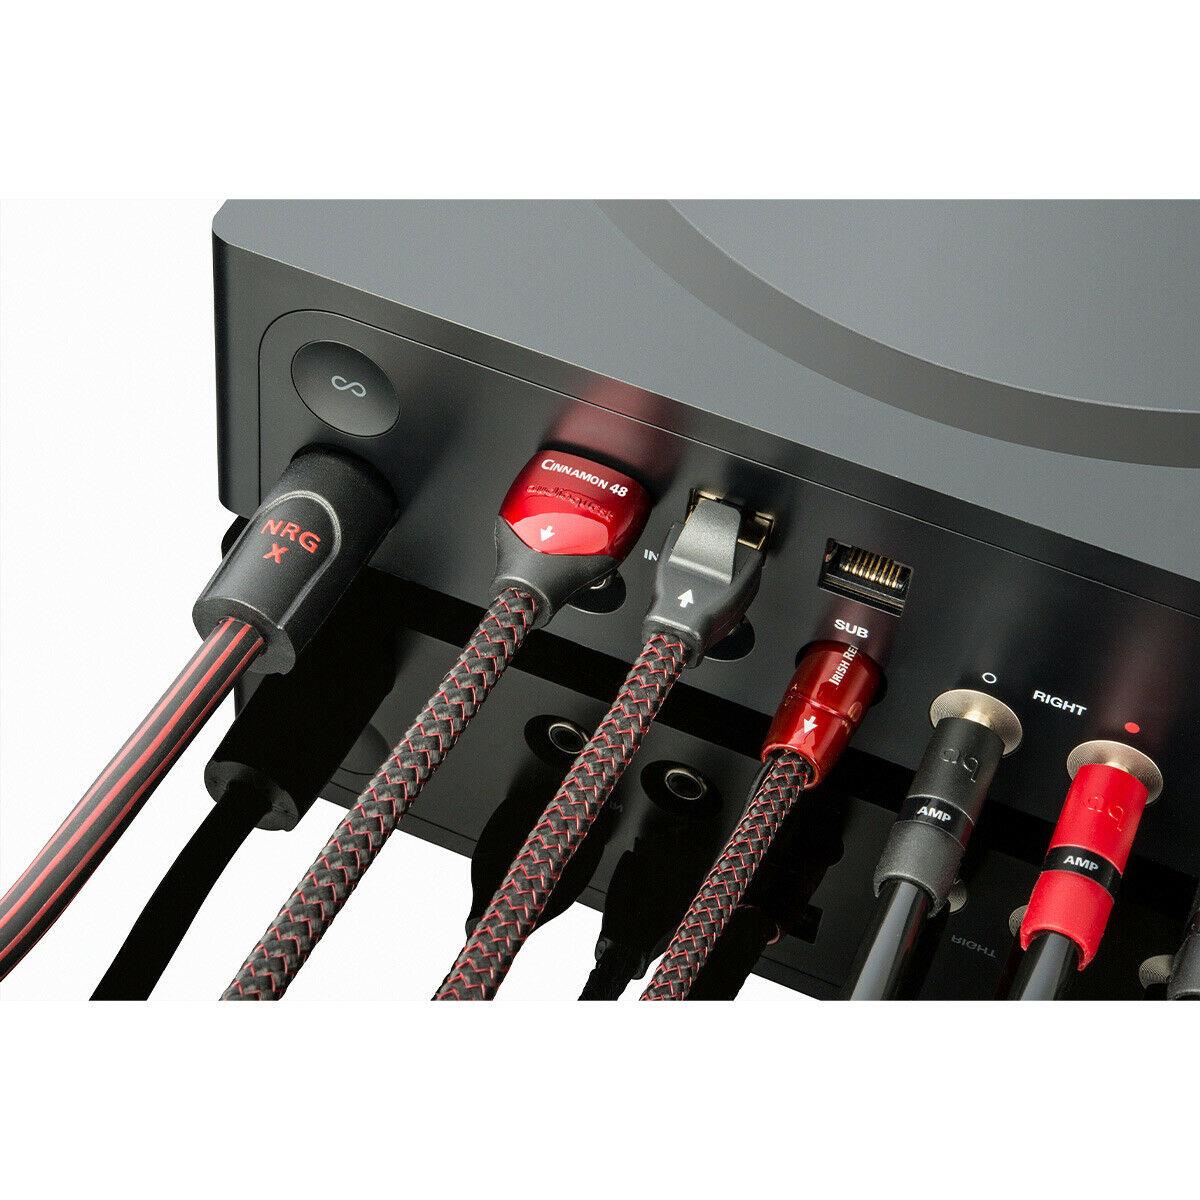 AudioQuest - Cinnamon HDMI Cable - Music Direct